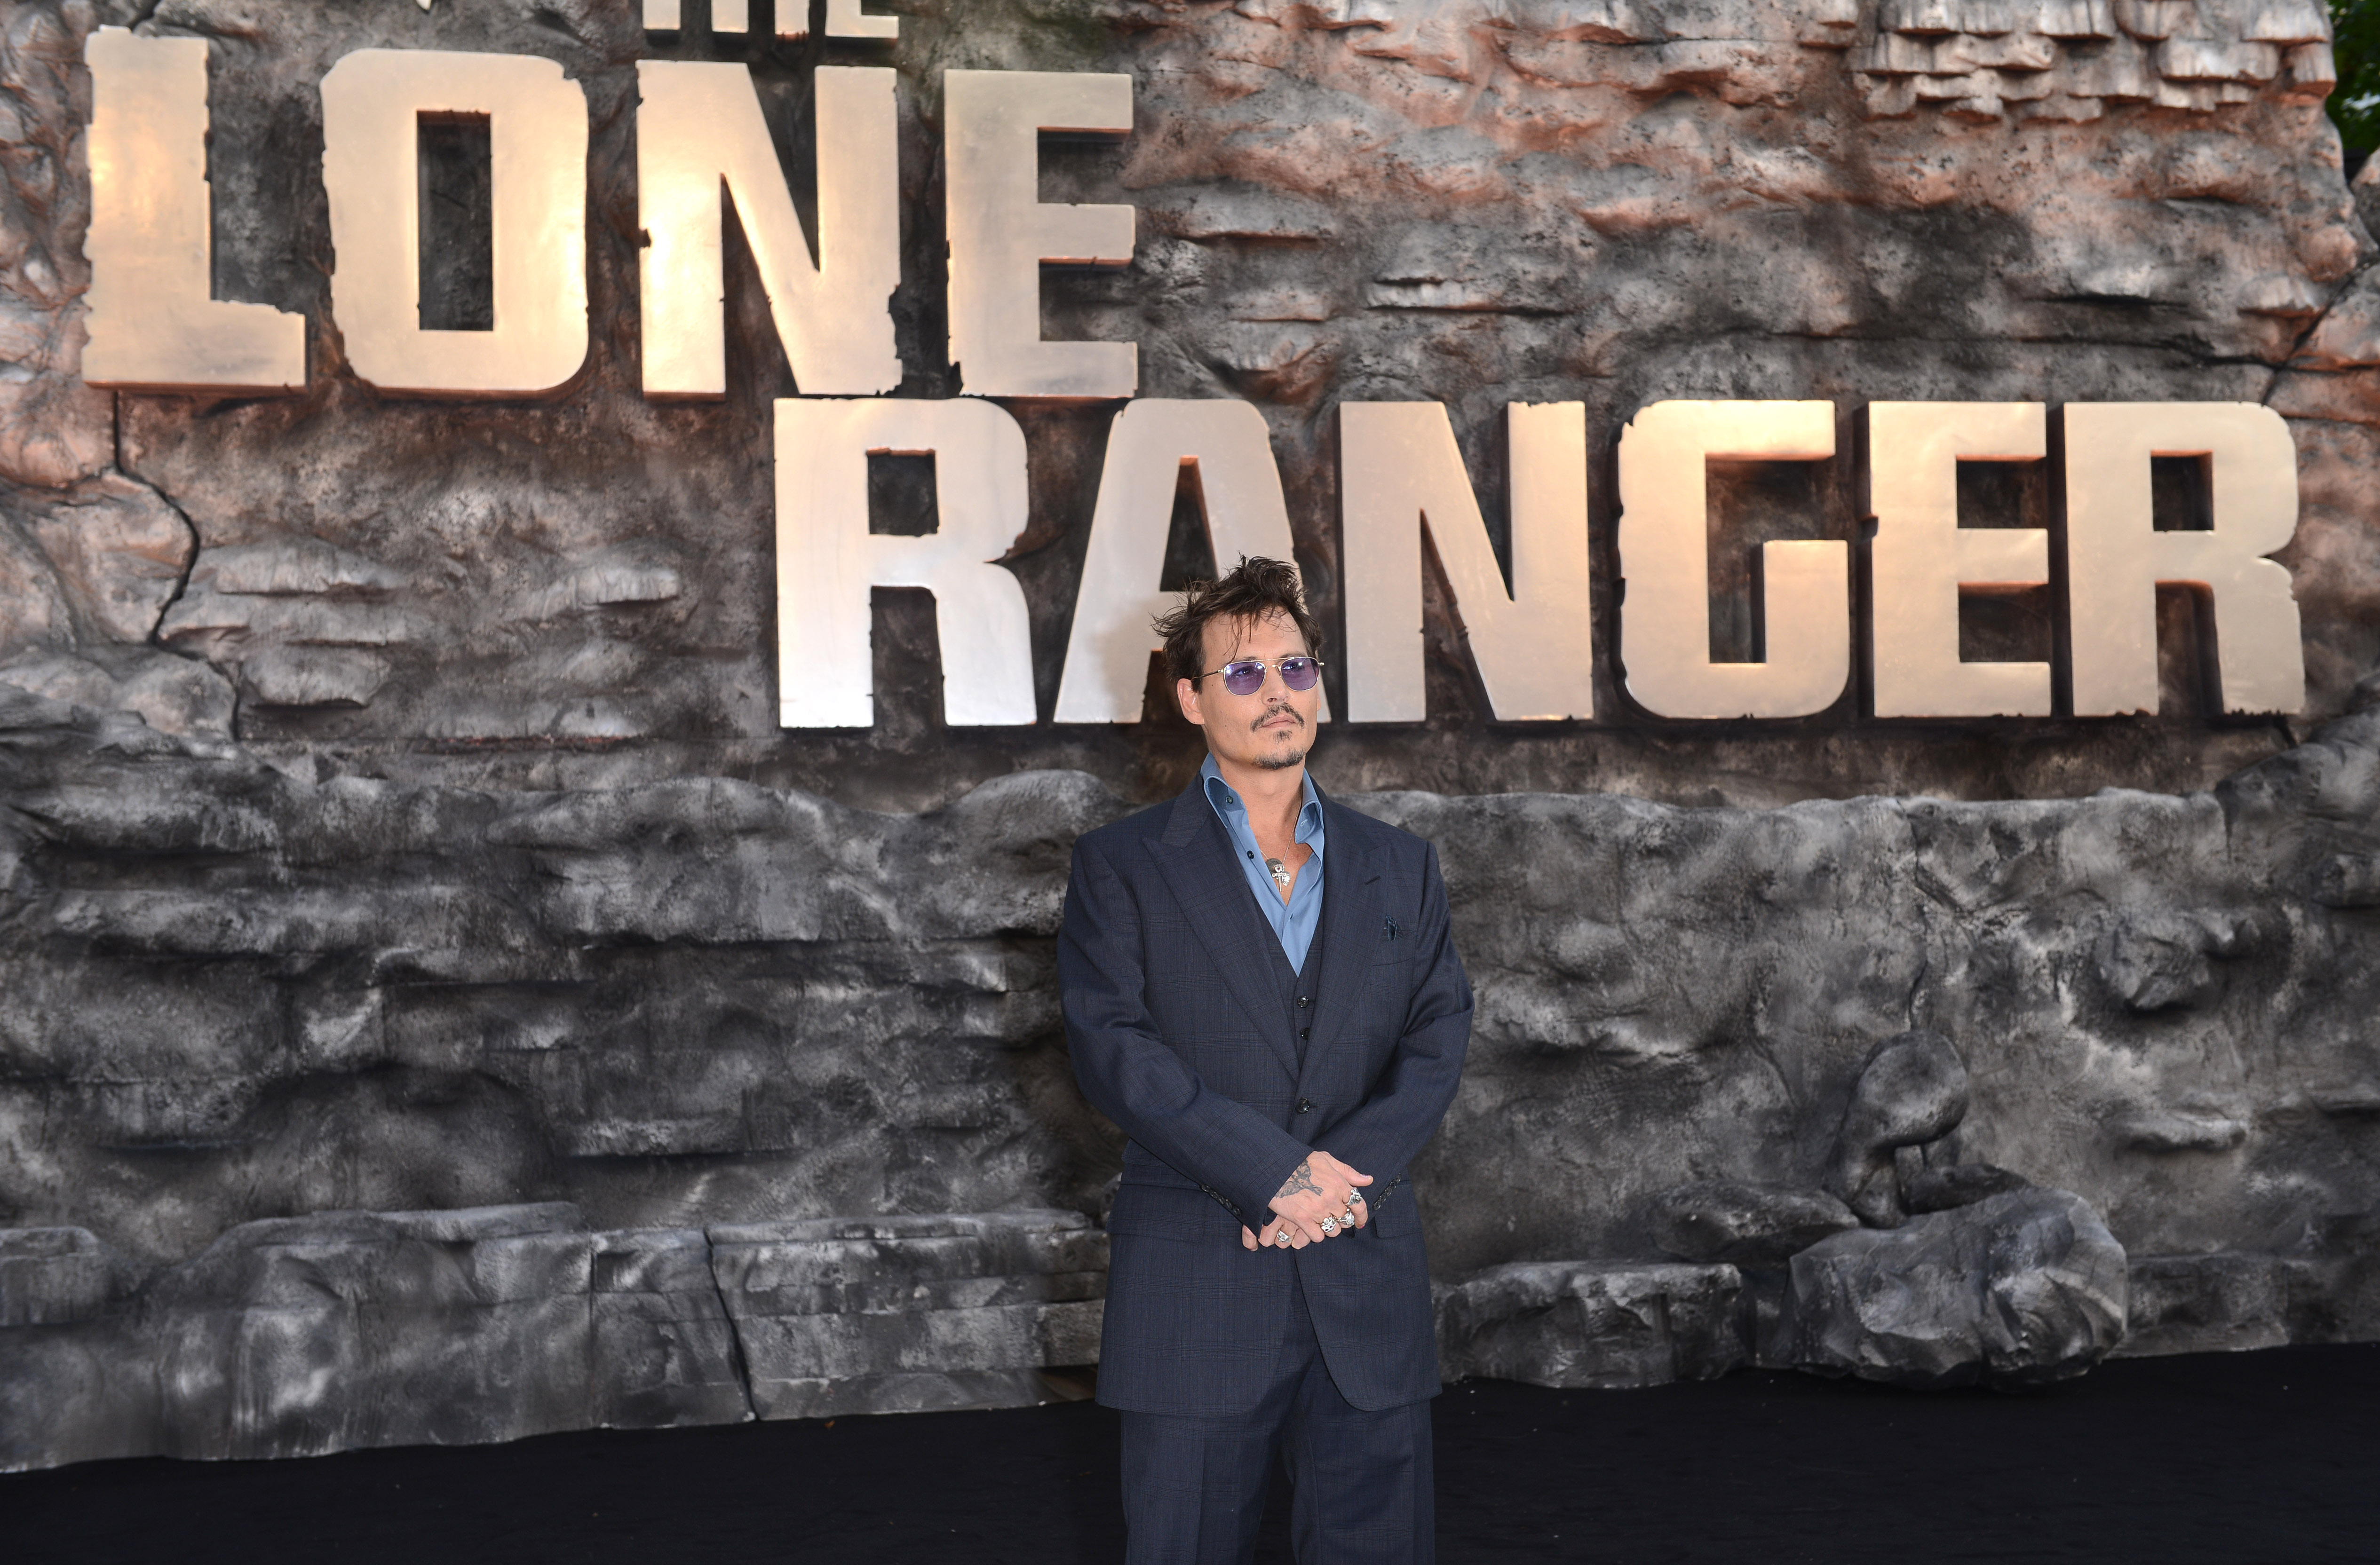 Johnny Depp en el estreno en el Reino Unido de "The Lone Ranger" en Londres, Inglaterra, el 21 de julio de 2013 | Foto: Getty Images